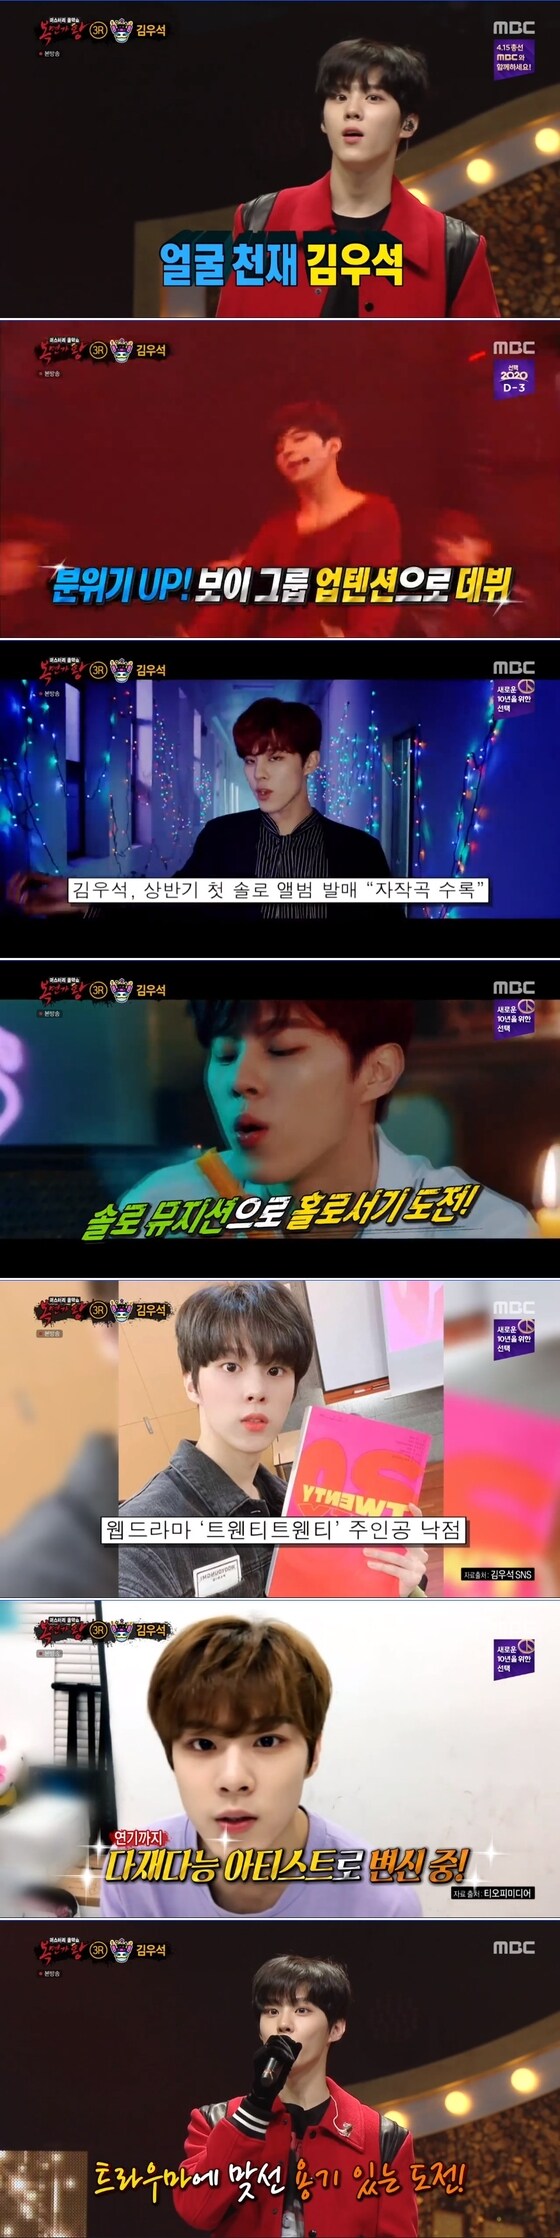 MBC '복면가왕' 방송 화면 캡처© 뉴스1